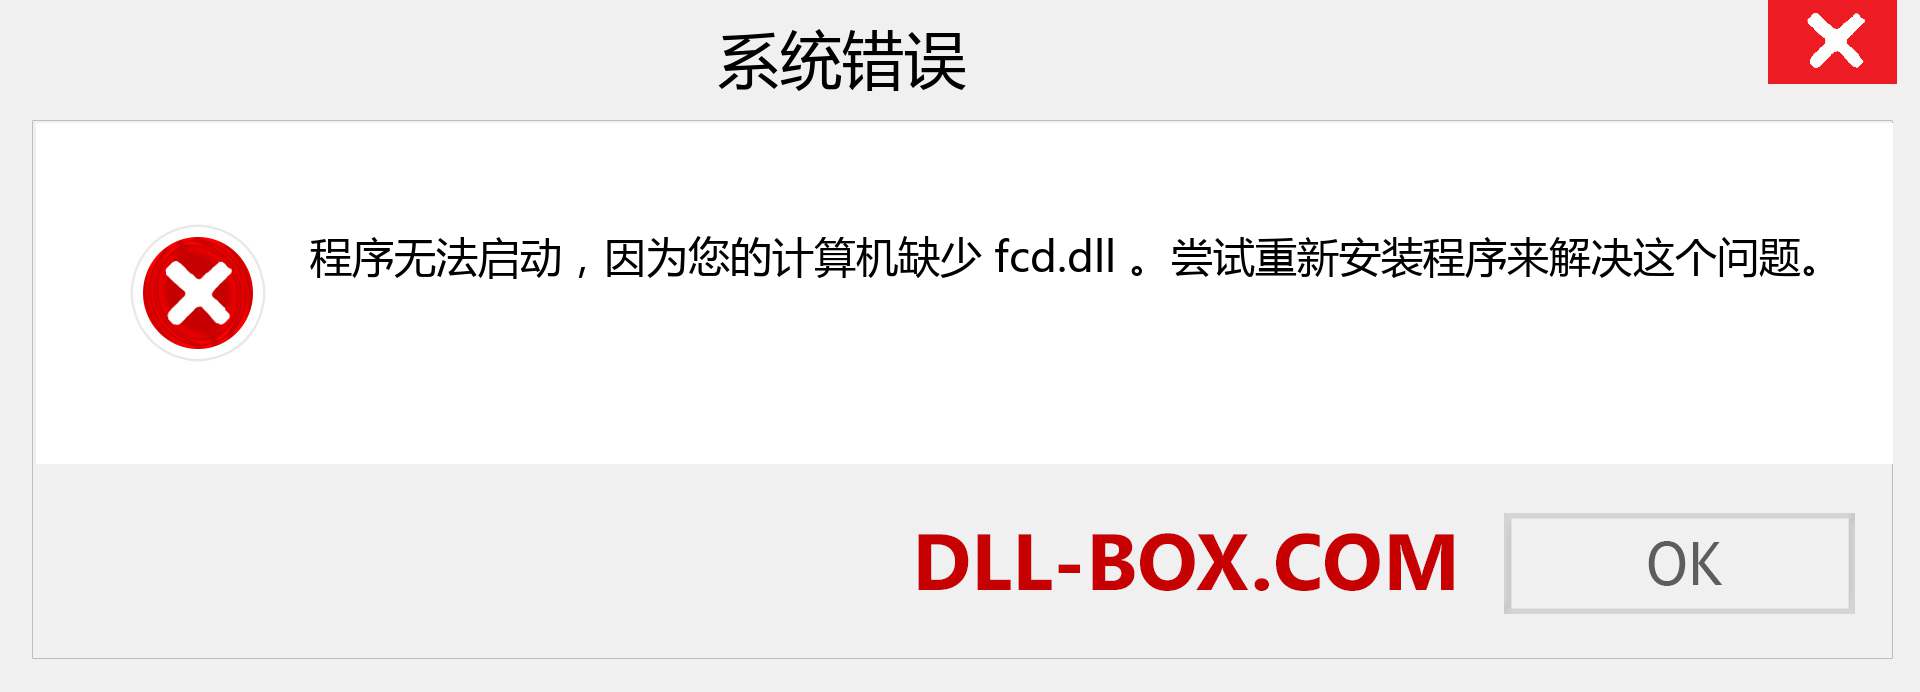 fcd.dll 文件丢失？。 适用于 Windows 7、8、10 的下载 - 修复 Windows、照片、图像上的 fcd dll 丢失错误